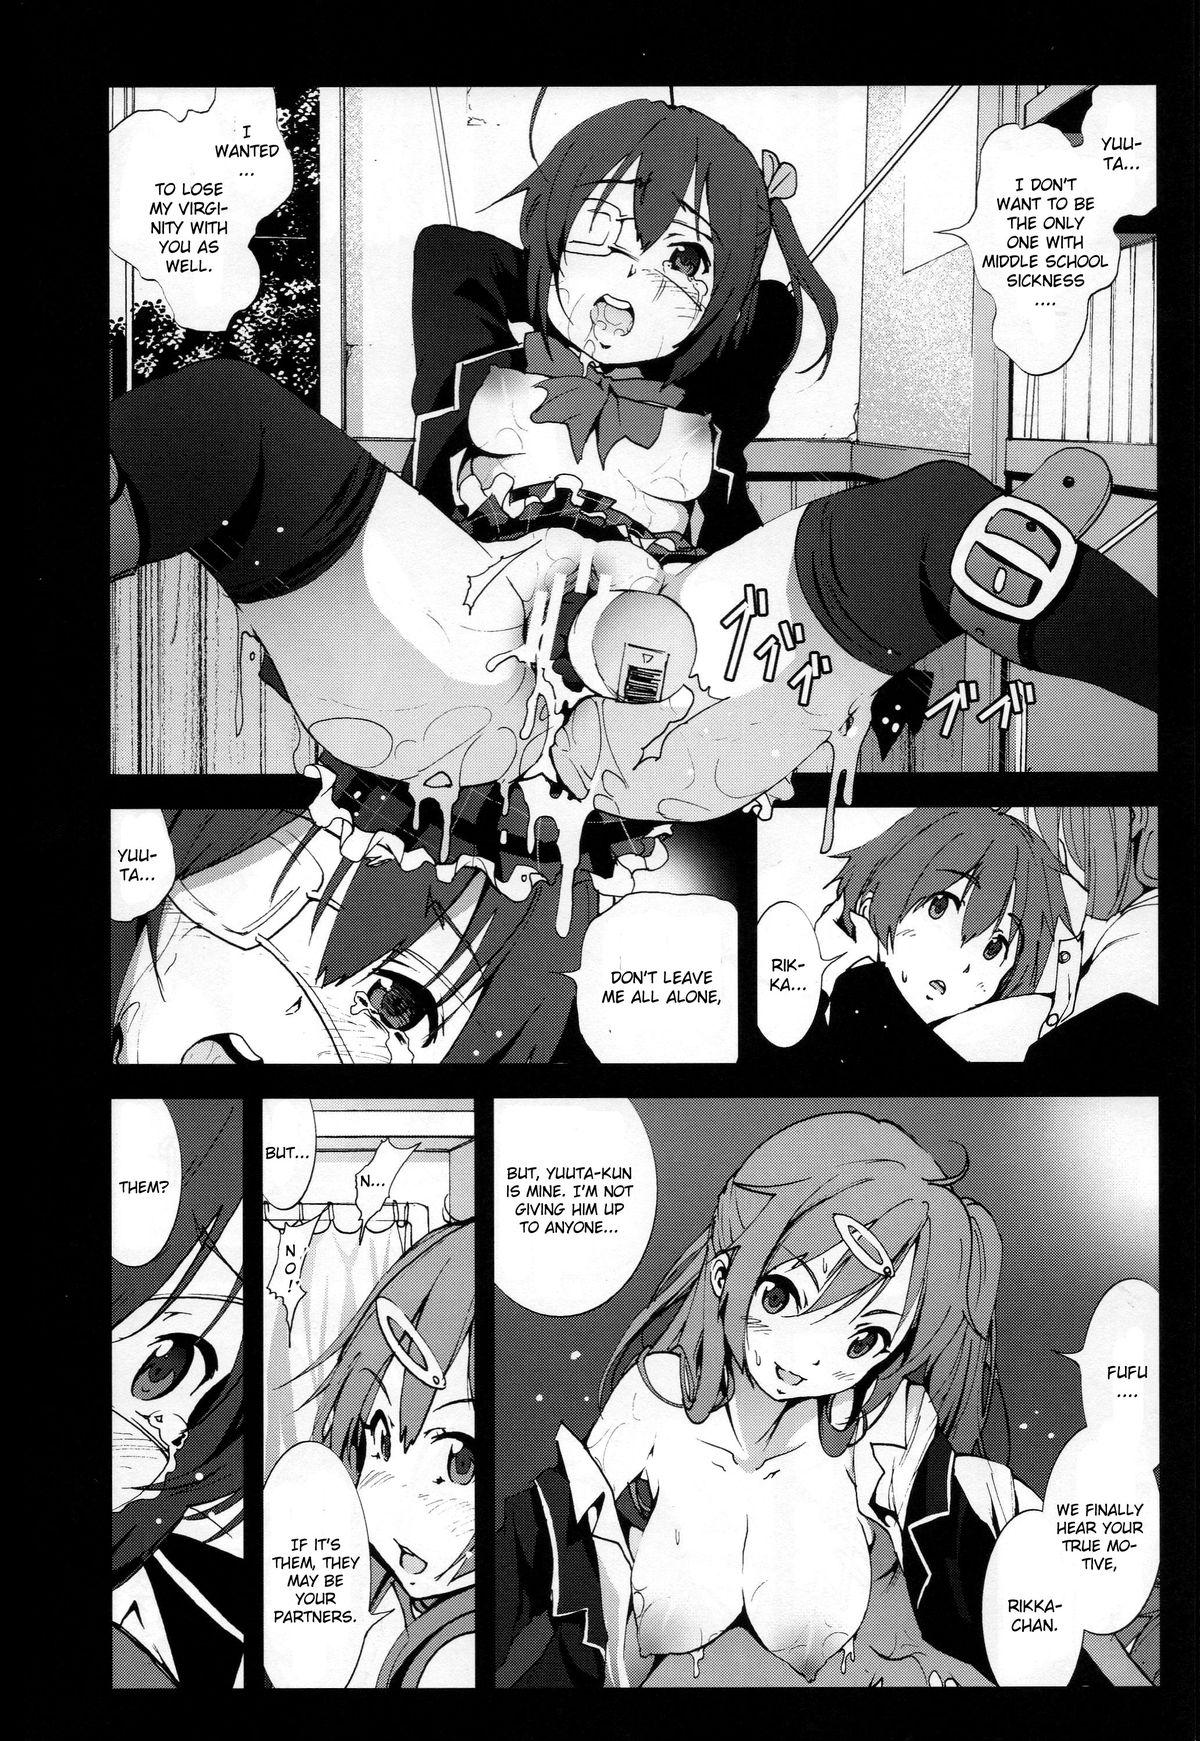 Putas Mori Summer Oikari! Chuunibyou no Rikka chan wo Do S na Choukyou Rape! - Chuunibyou demo koi ga shitai Gonzo - Page 11